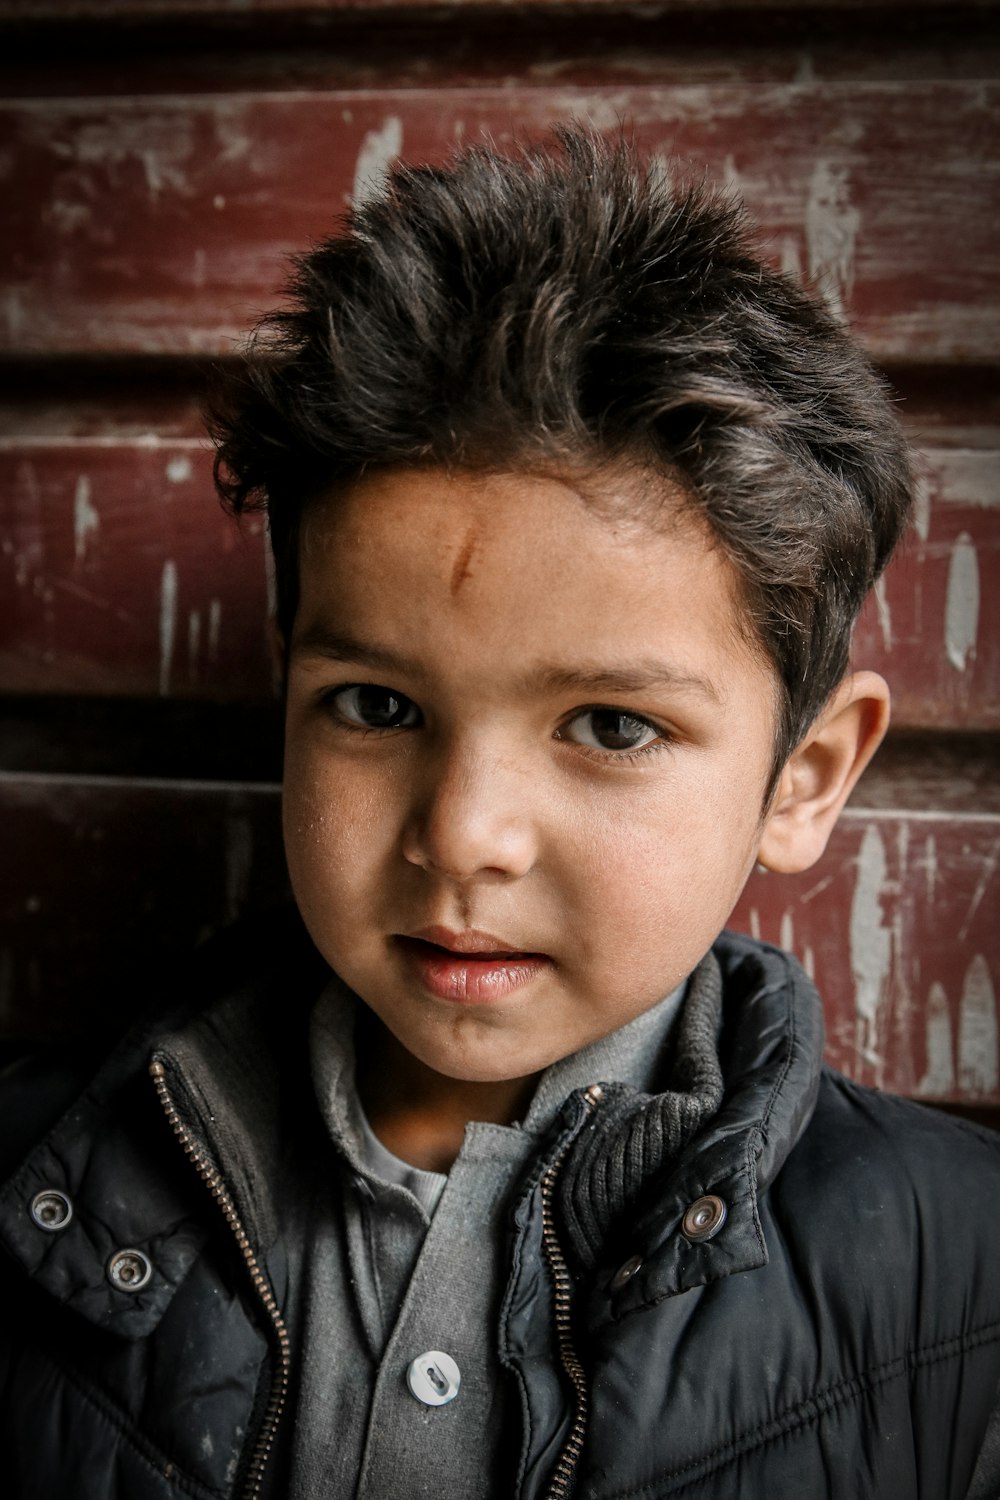 Foto Chico con chaqueta de cuero negra – Imagen Pakistán gratis en Unsplash